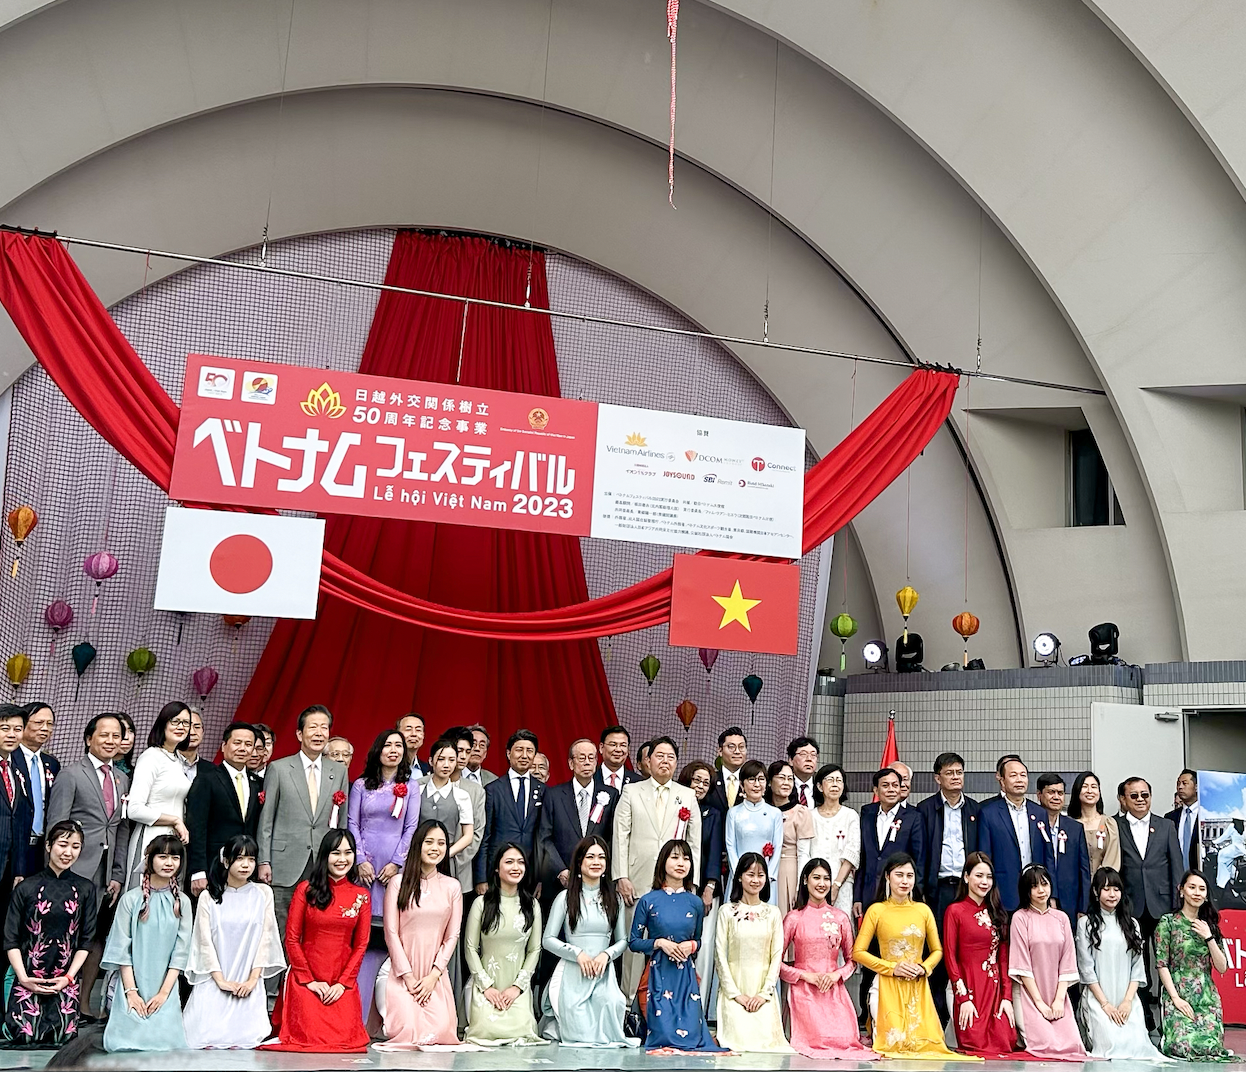 “Hy vọng”: chủ đề của Lễ hội Việt Nam tại Tokyo, Nhật Bản năm 2023